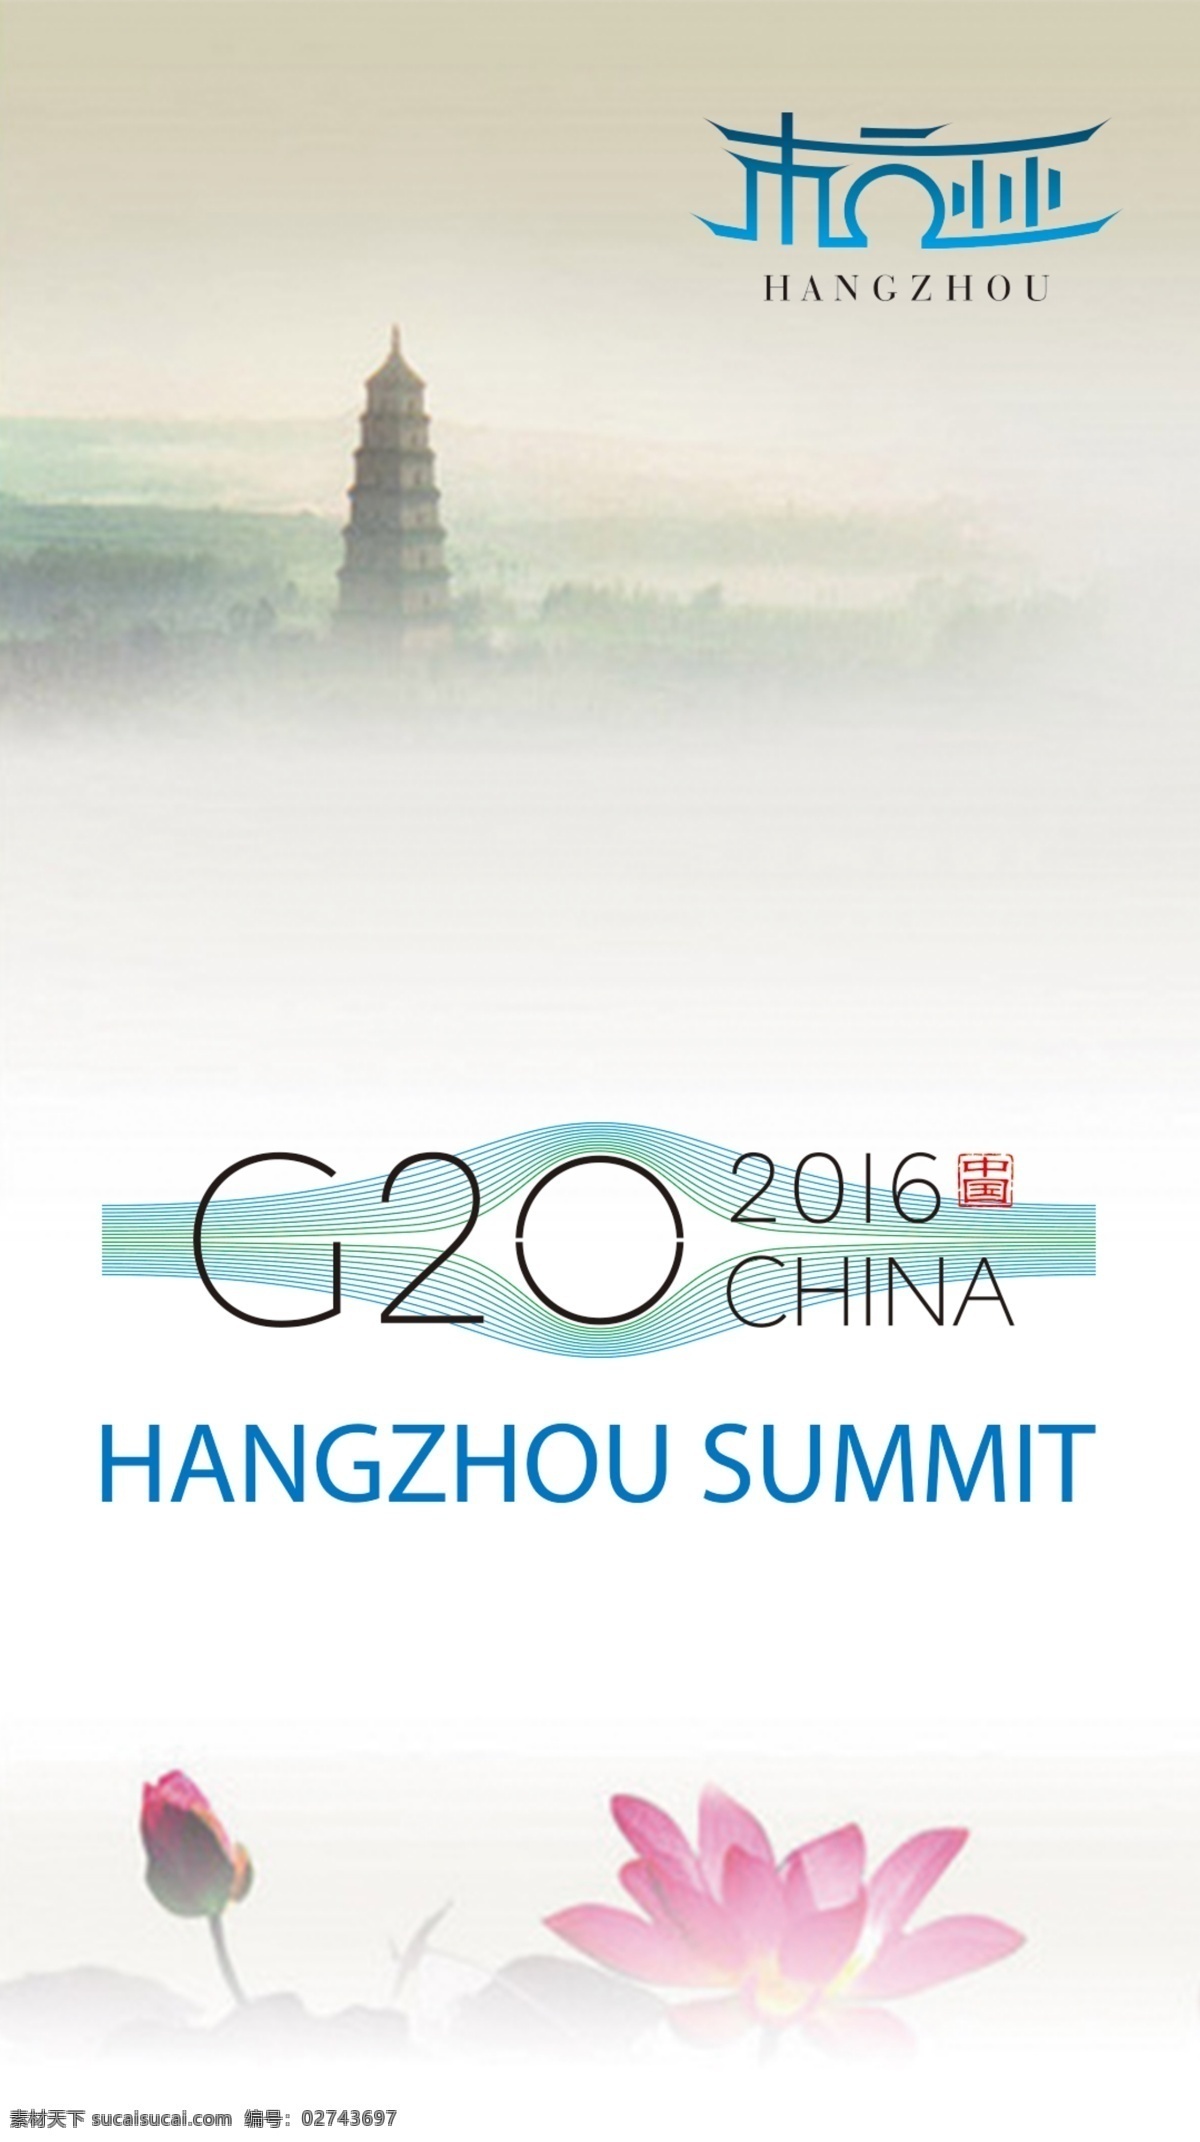 杭州 g20 峰会 雷峰塔 标志 海报 背景 g20峰会 荷花 中国风 简约 g20标志 logo 干净 2016 杭州g20 淡雅 云雾 白色